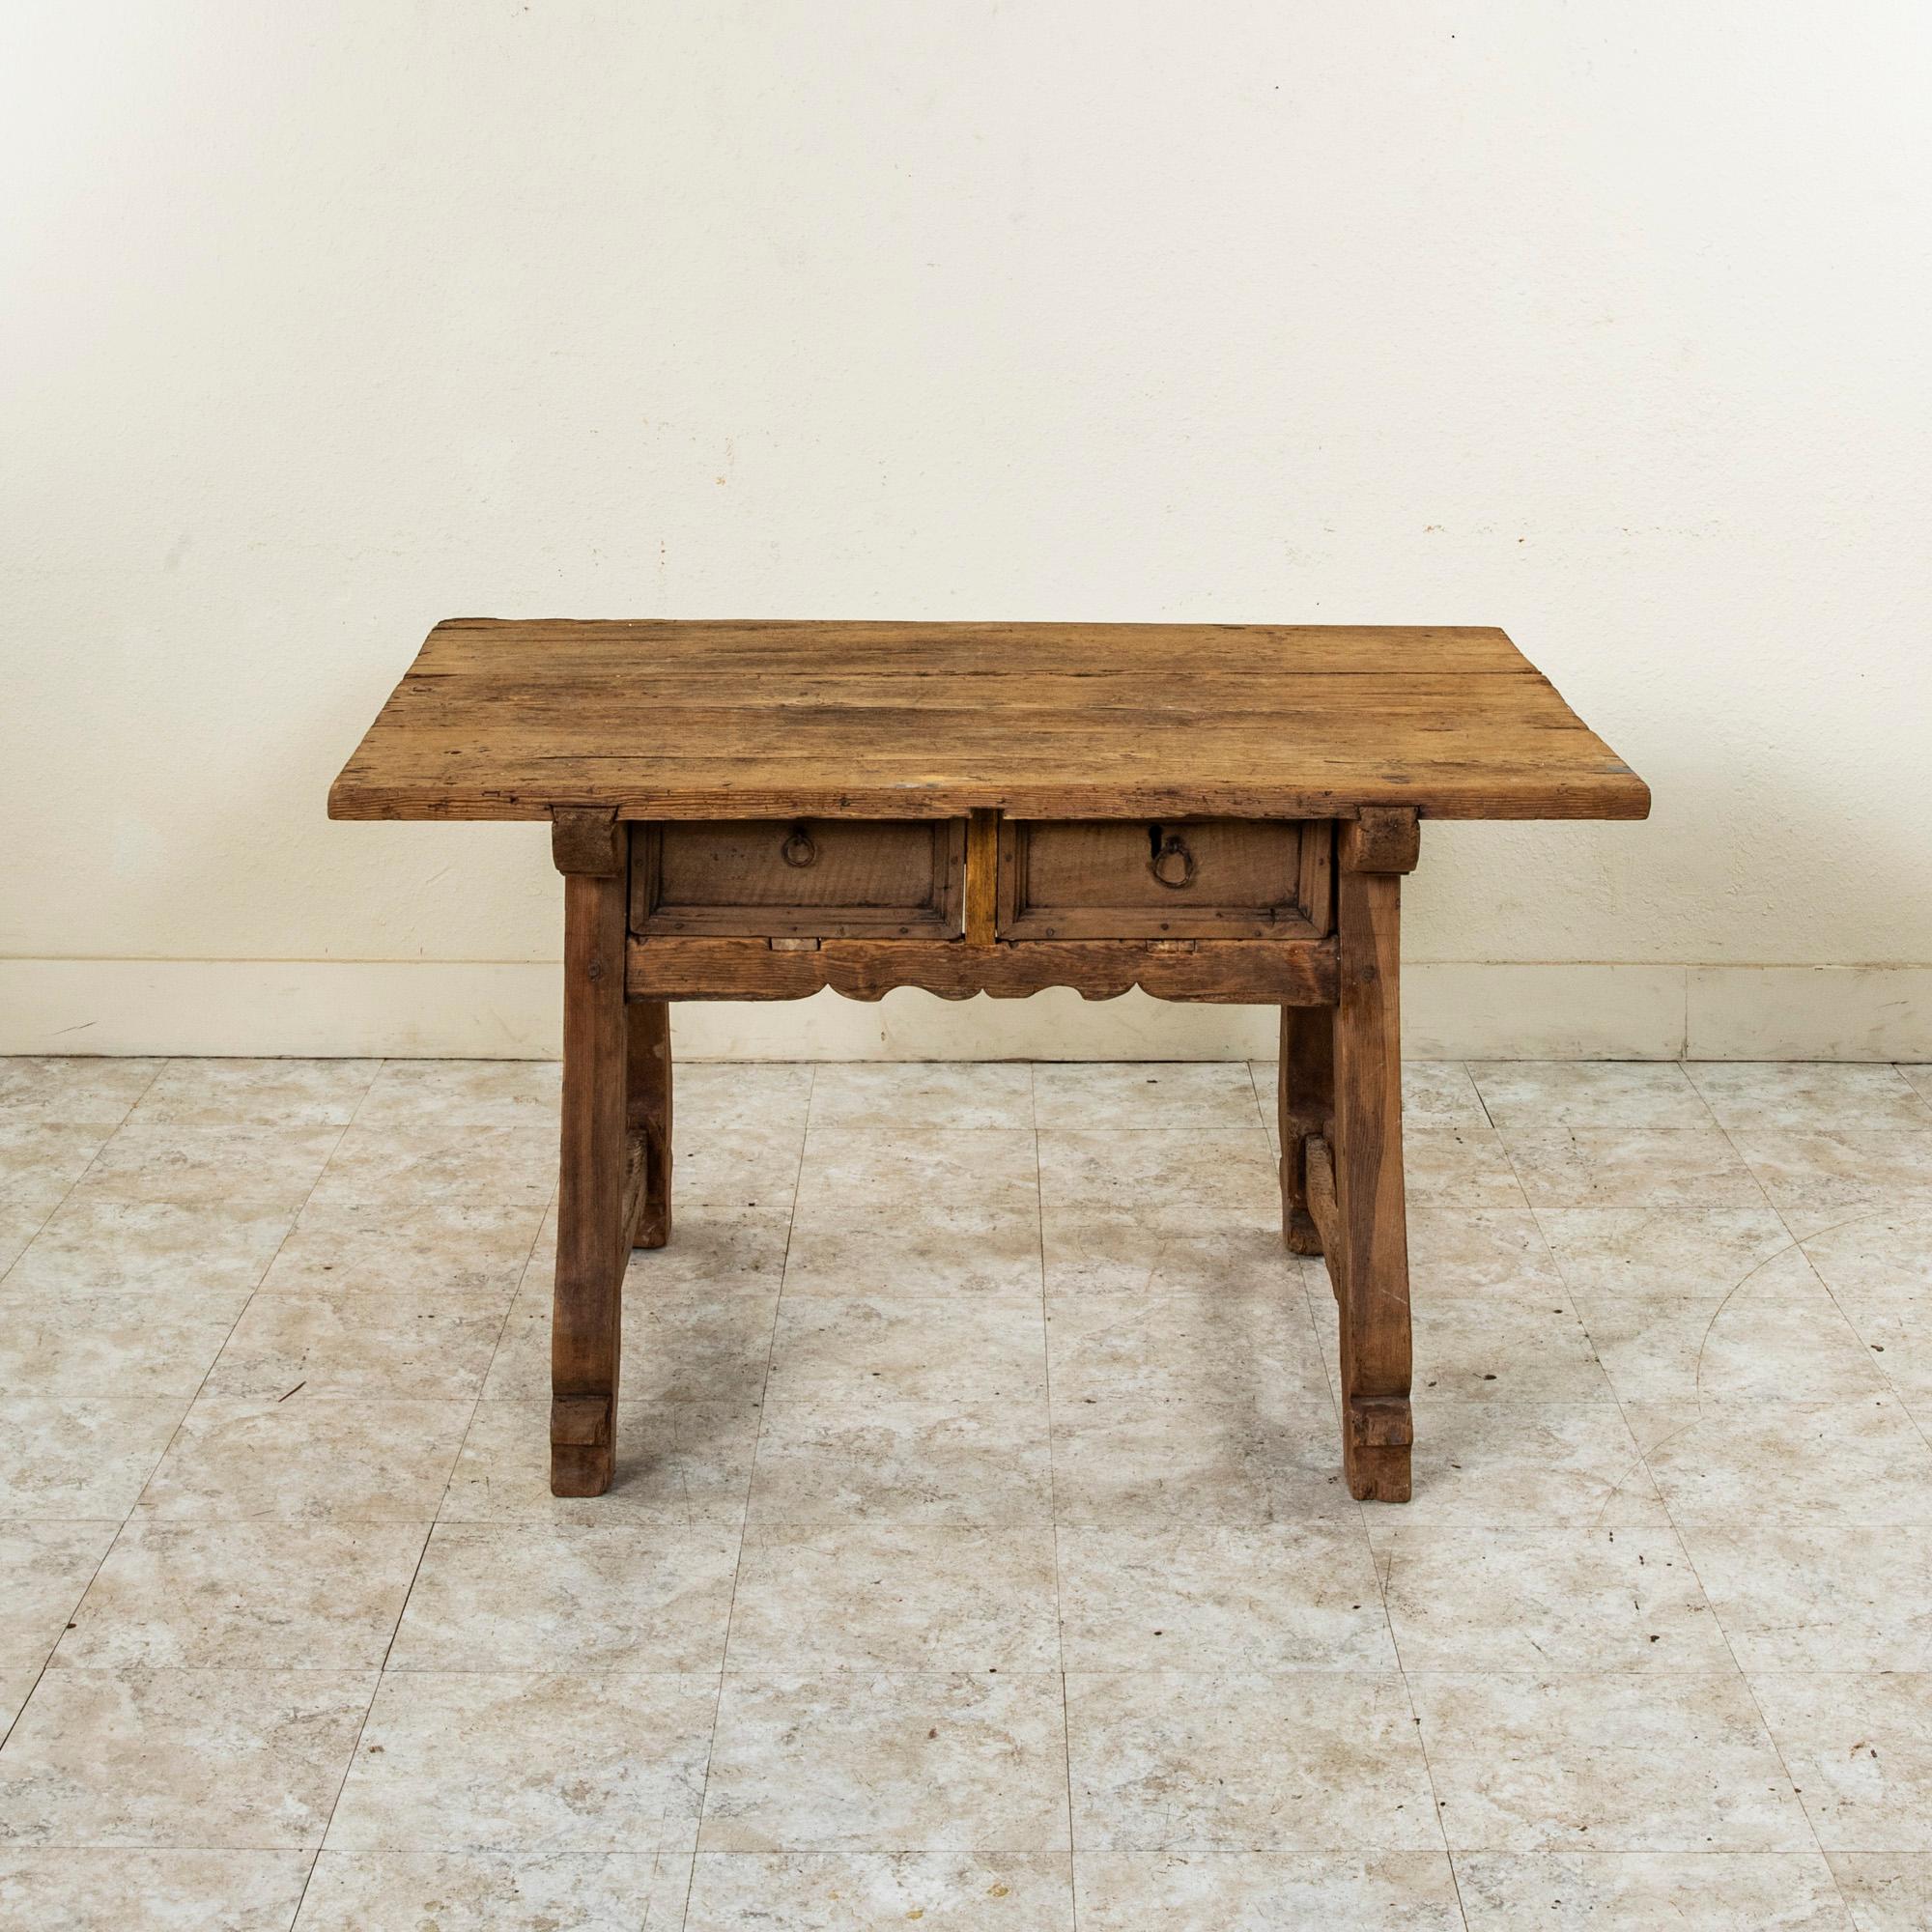 Dieser rustikale, handgefertigte Schreibtisch aus Kiefernholz stammt aus der Auvergne, einer Bergregion in Zentralfrankreich. Dieser Tisch wurde von einem Ziegenhirten im siebzehnten Jahrhundert bei der Pflege seiner Schafe geschaffen und ist mit